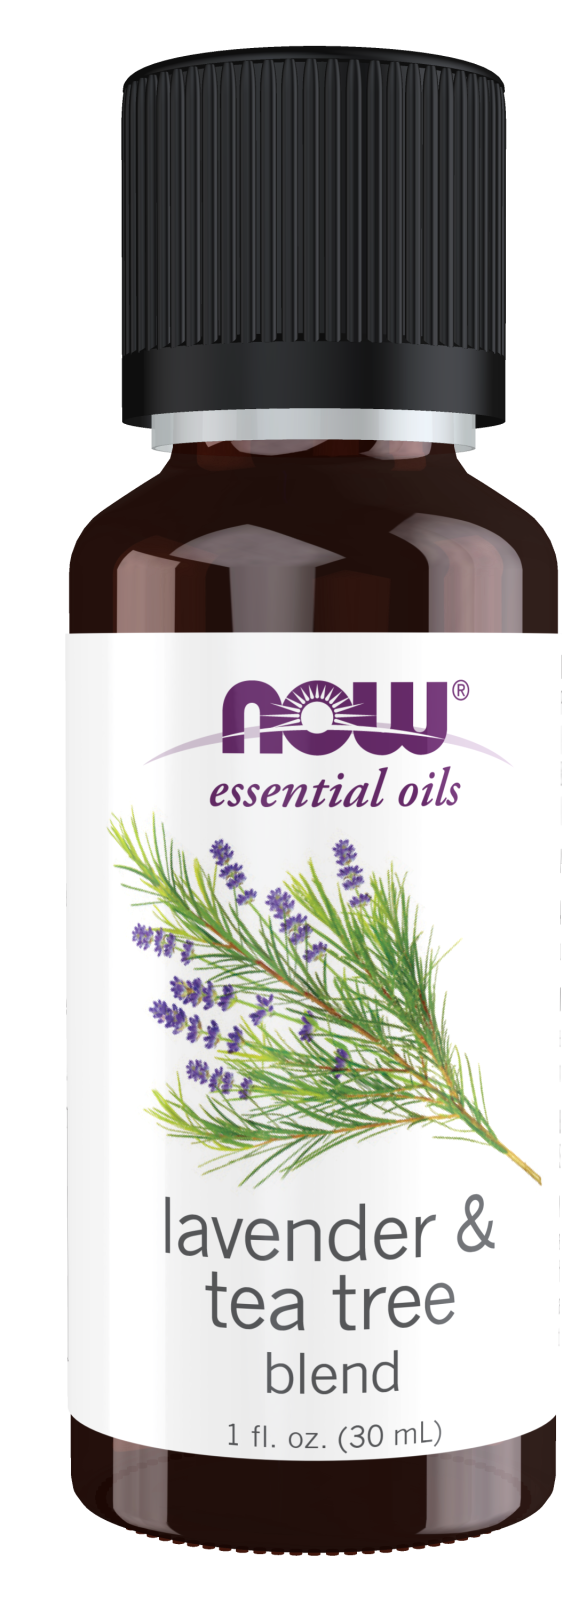 Lavender & Tea Tree Oil Blend - 1 fl. oz. Bottle Front